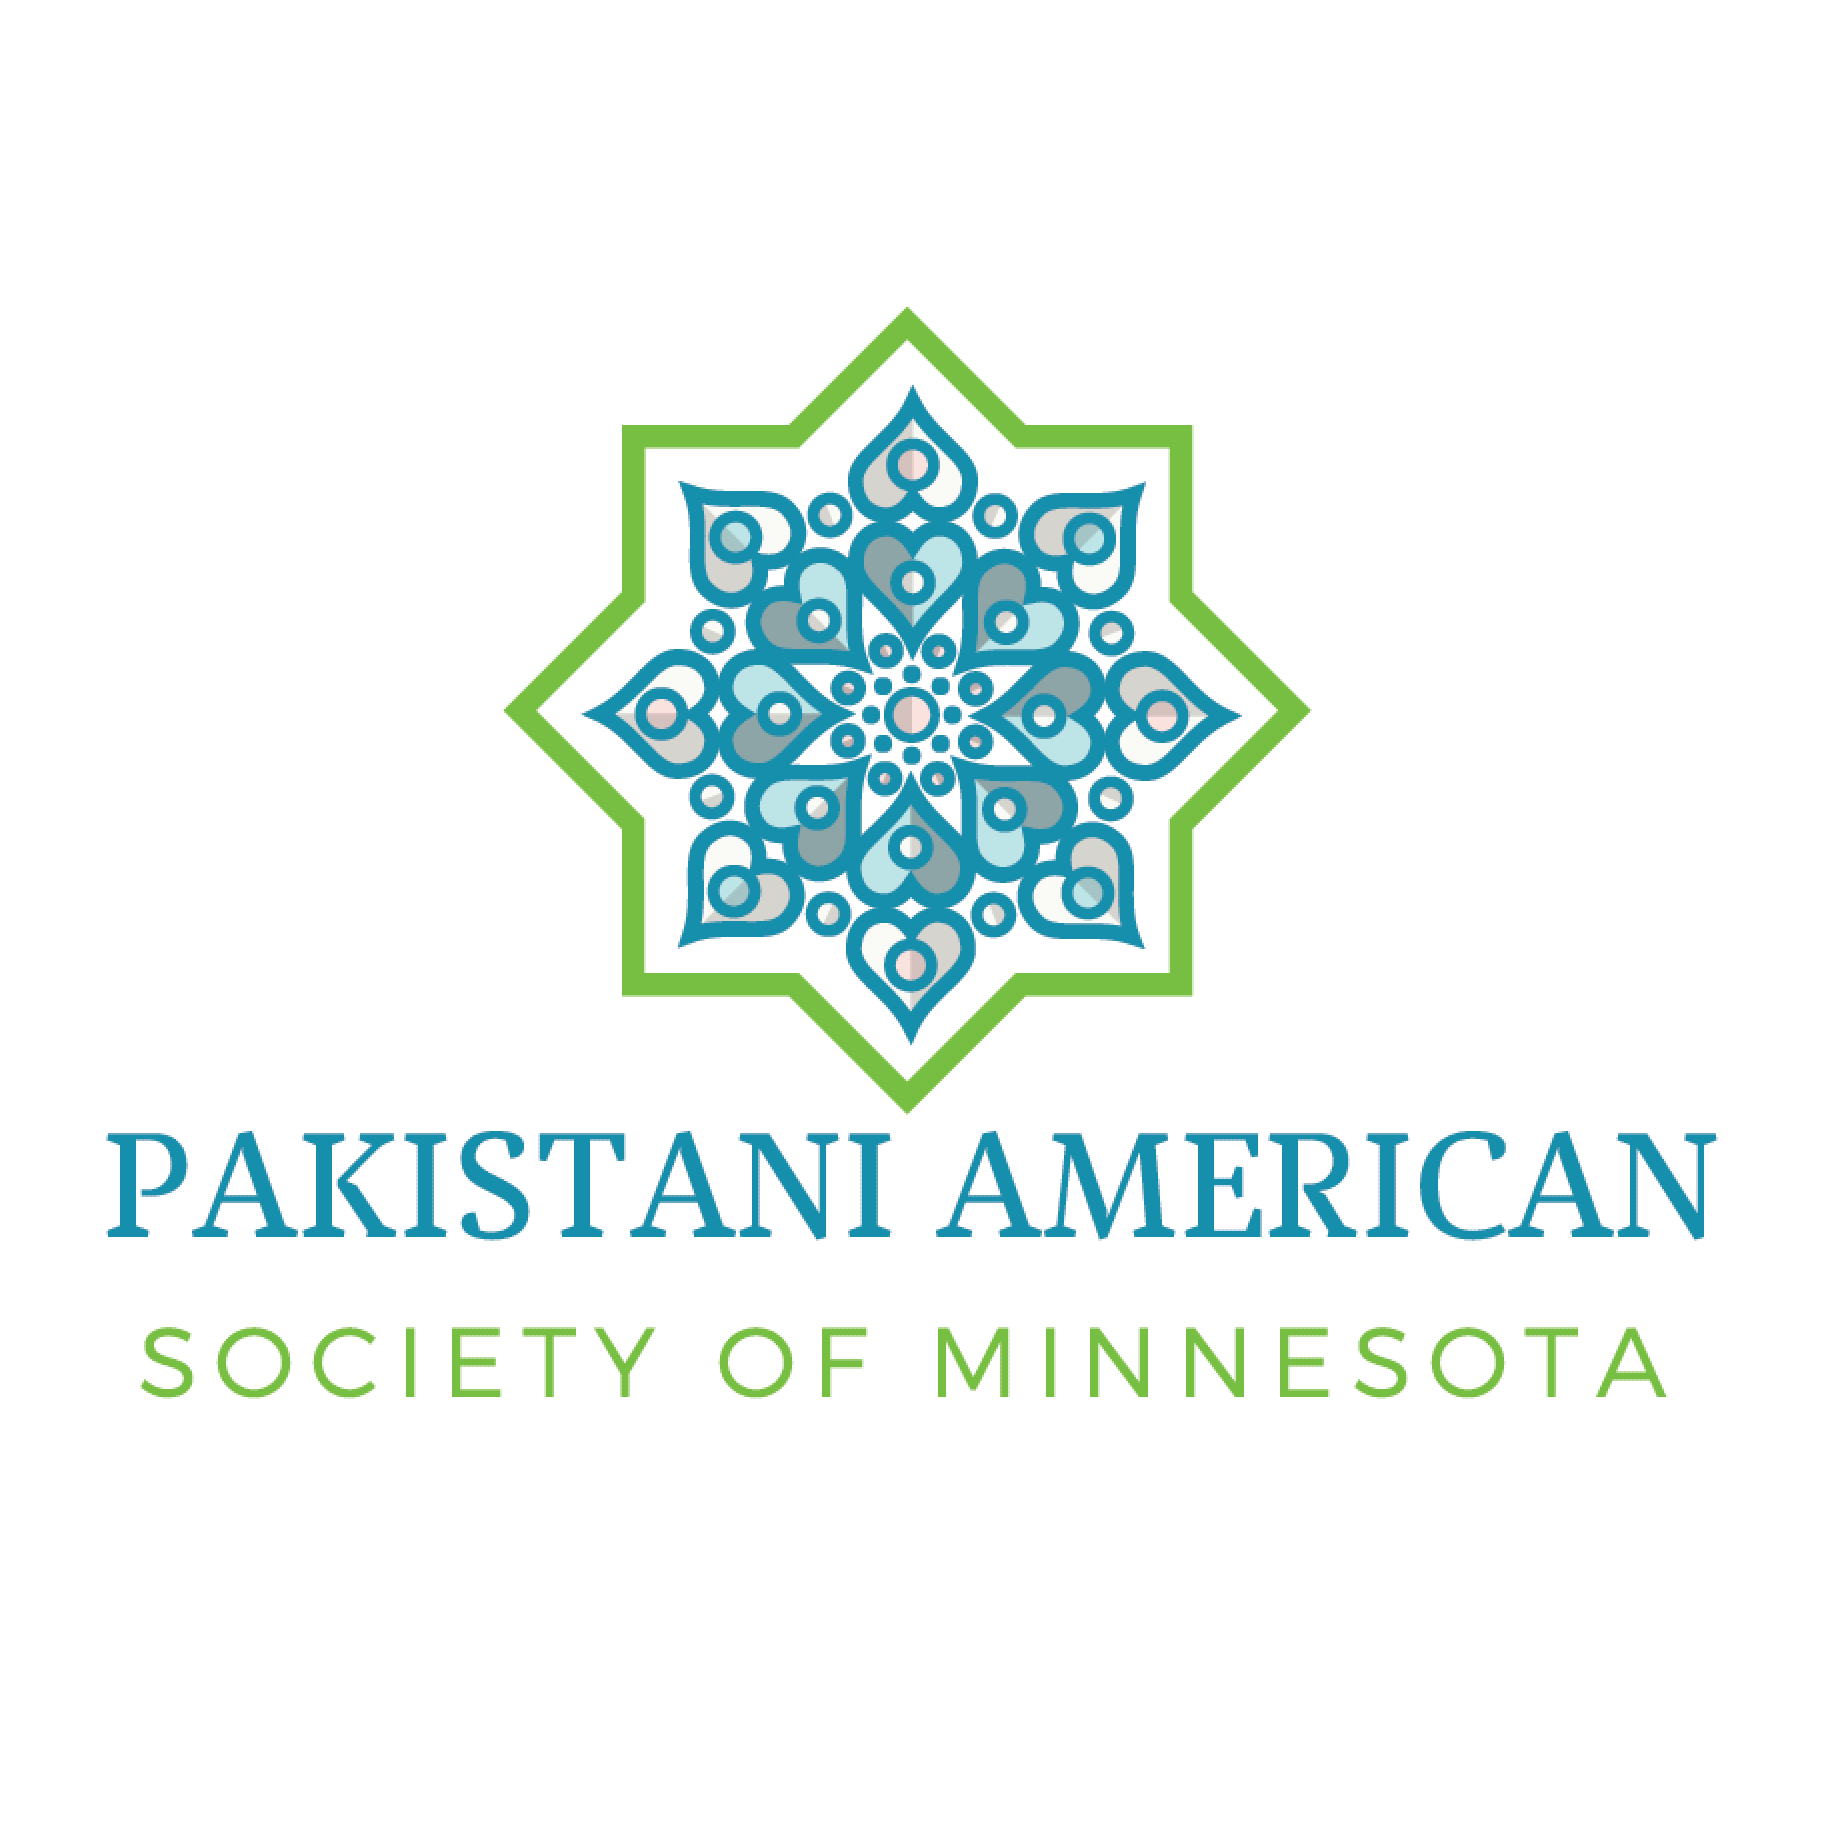 Pakistani Associations Near Me - Pakistani American Society of Minnesota